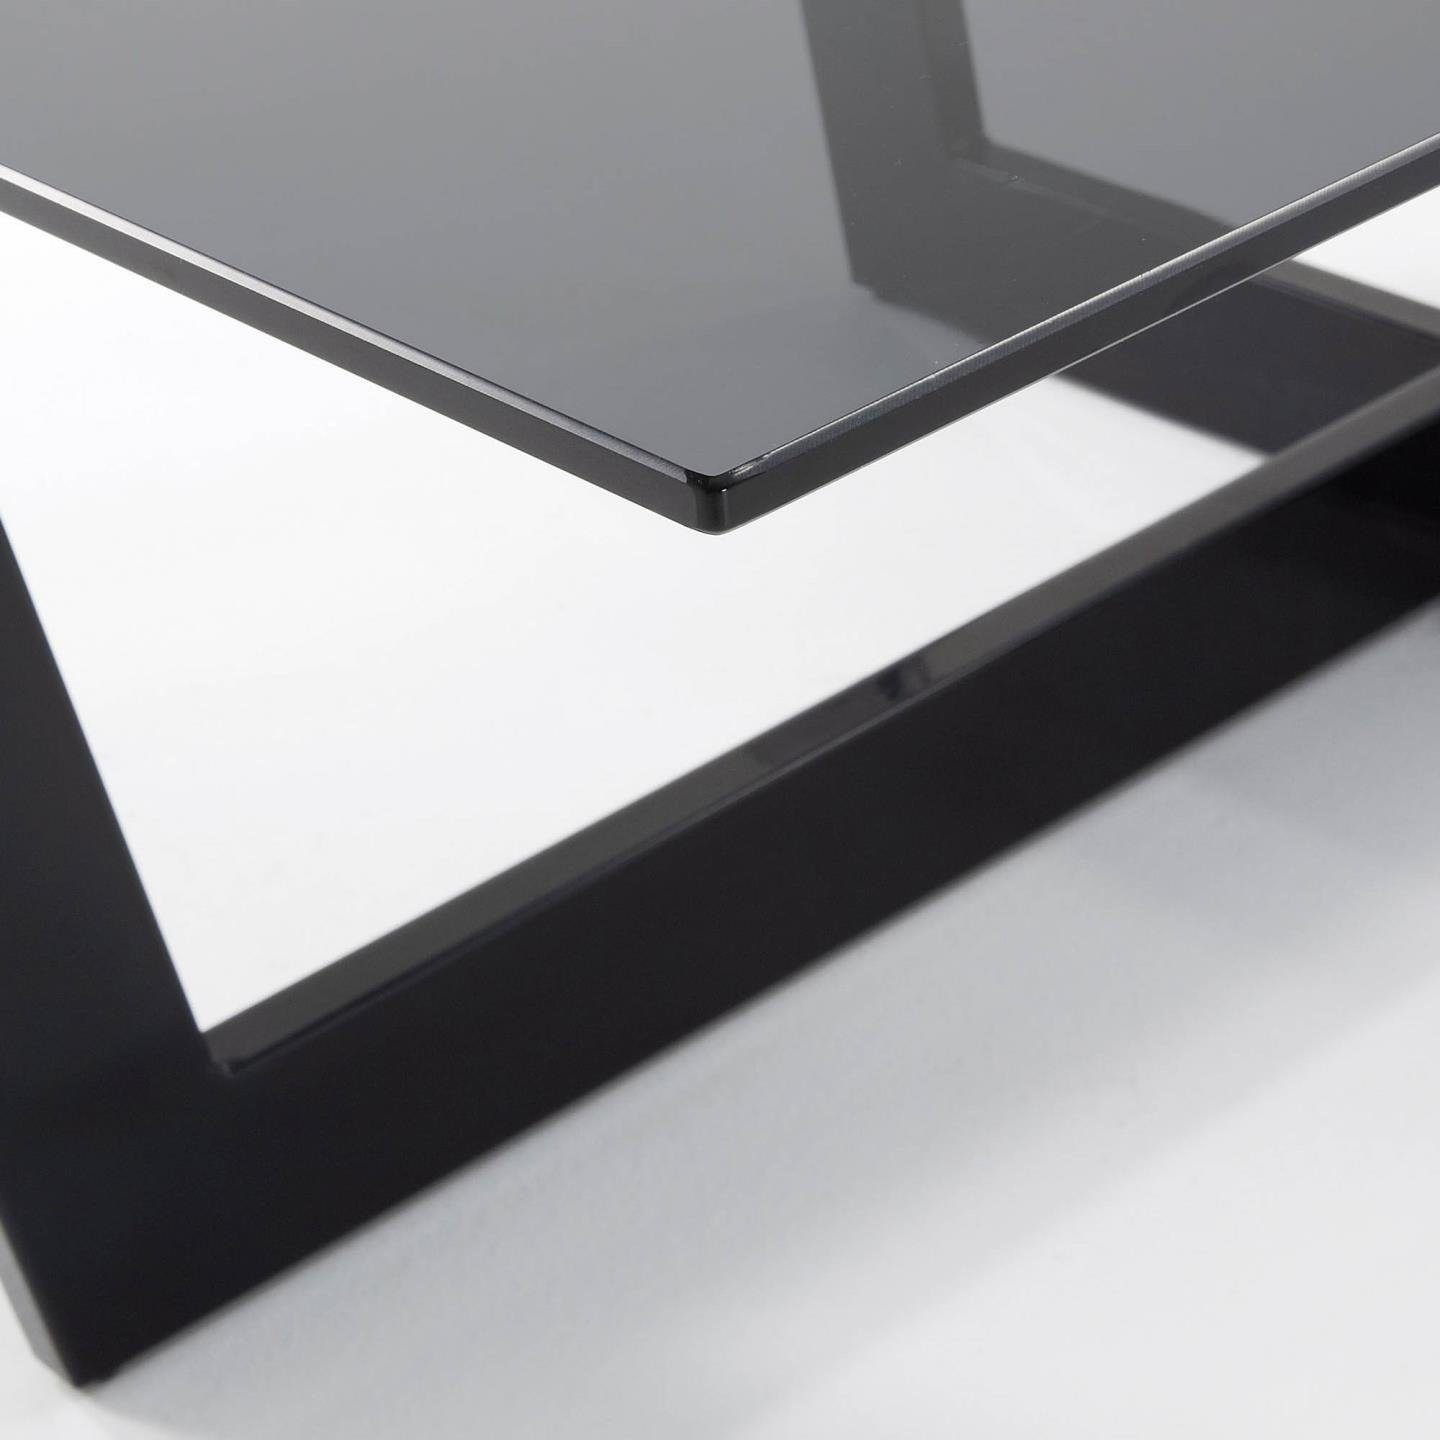 Natur24 Beistelltisch Stahlstruktur schwarz Glas Tisch Couchtisch Plam 120x70cm